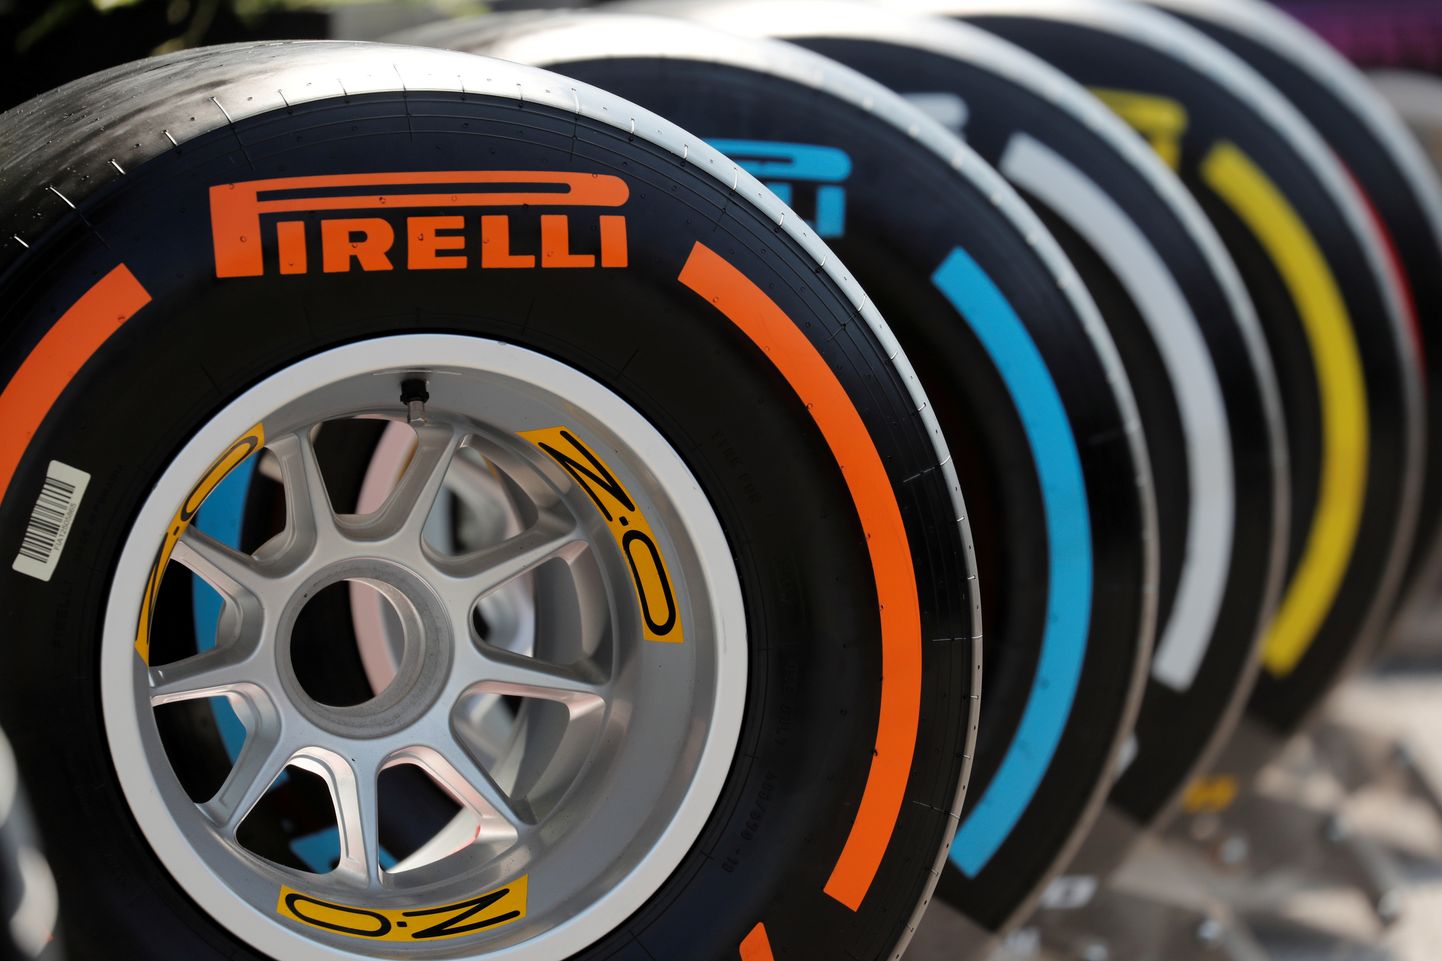 Pirelli rehvivalik kahaneb veidi, nimevalik kõvasti.